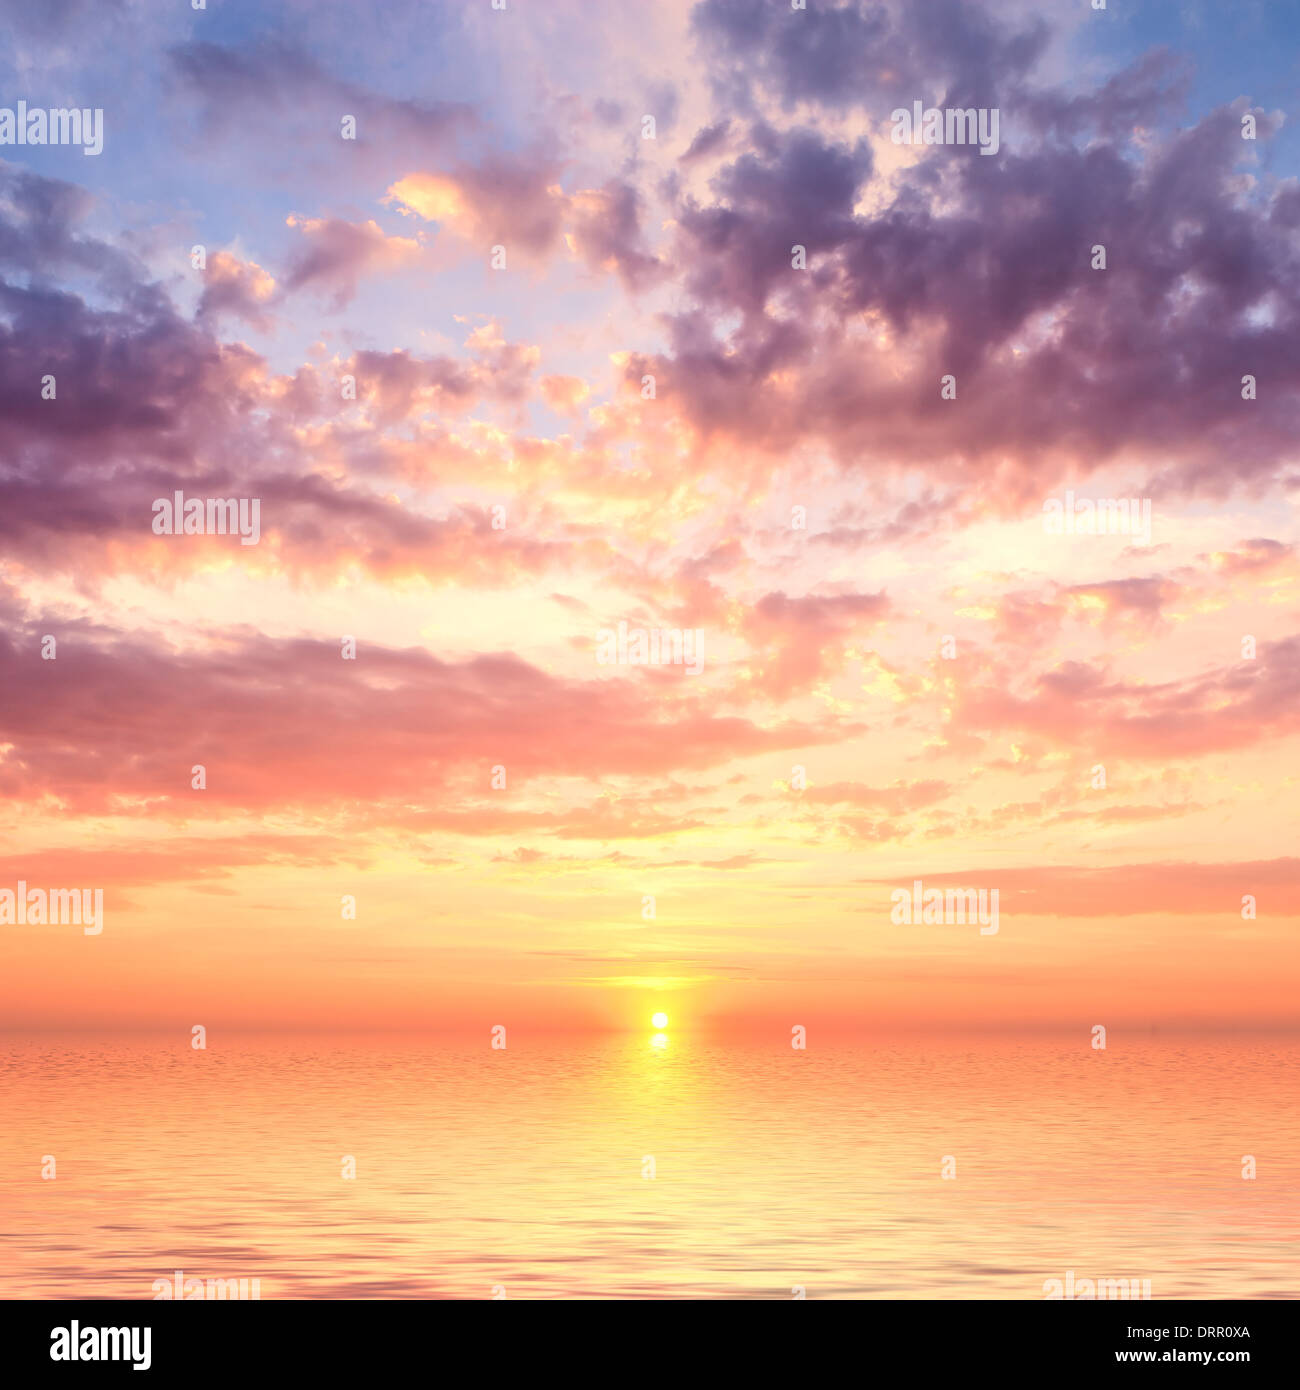 ocean sunset Stock Photo